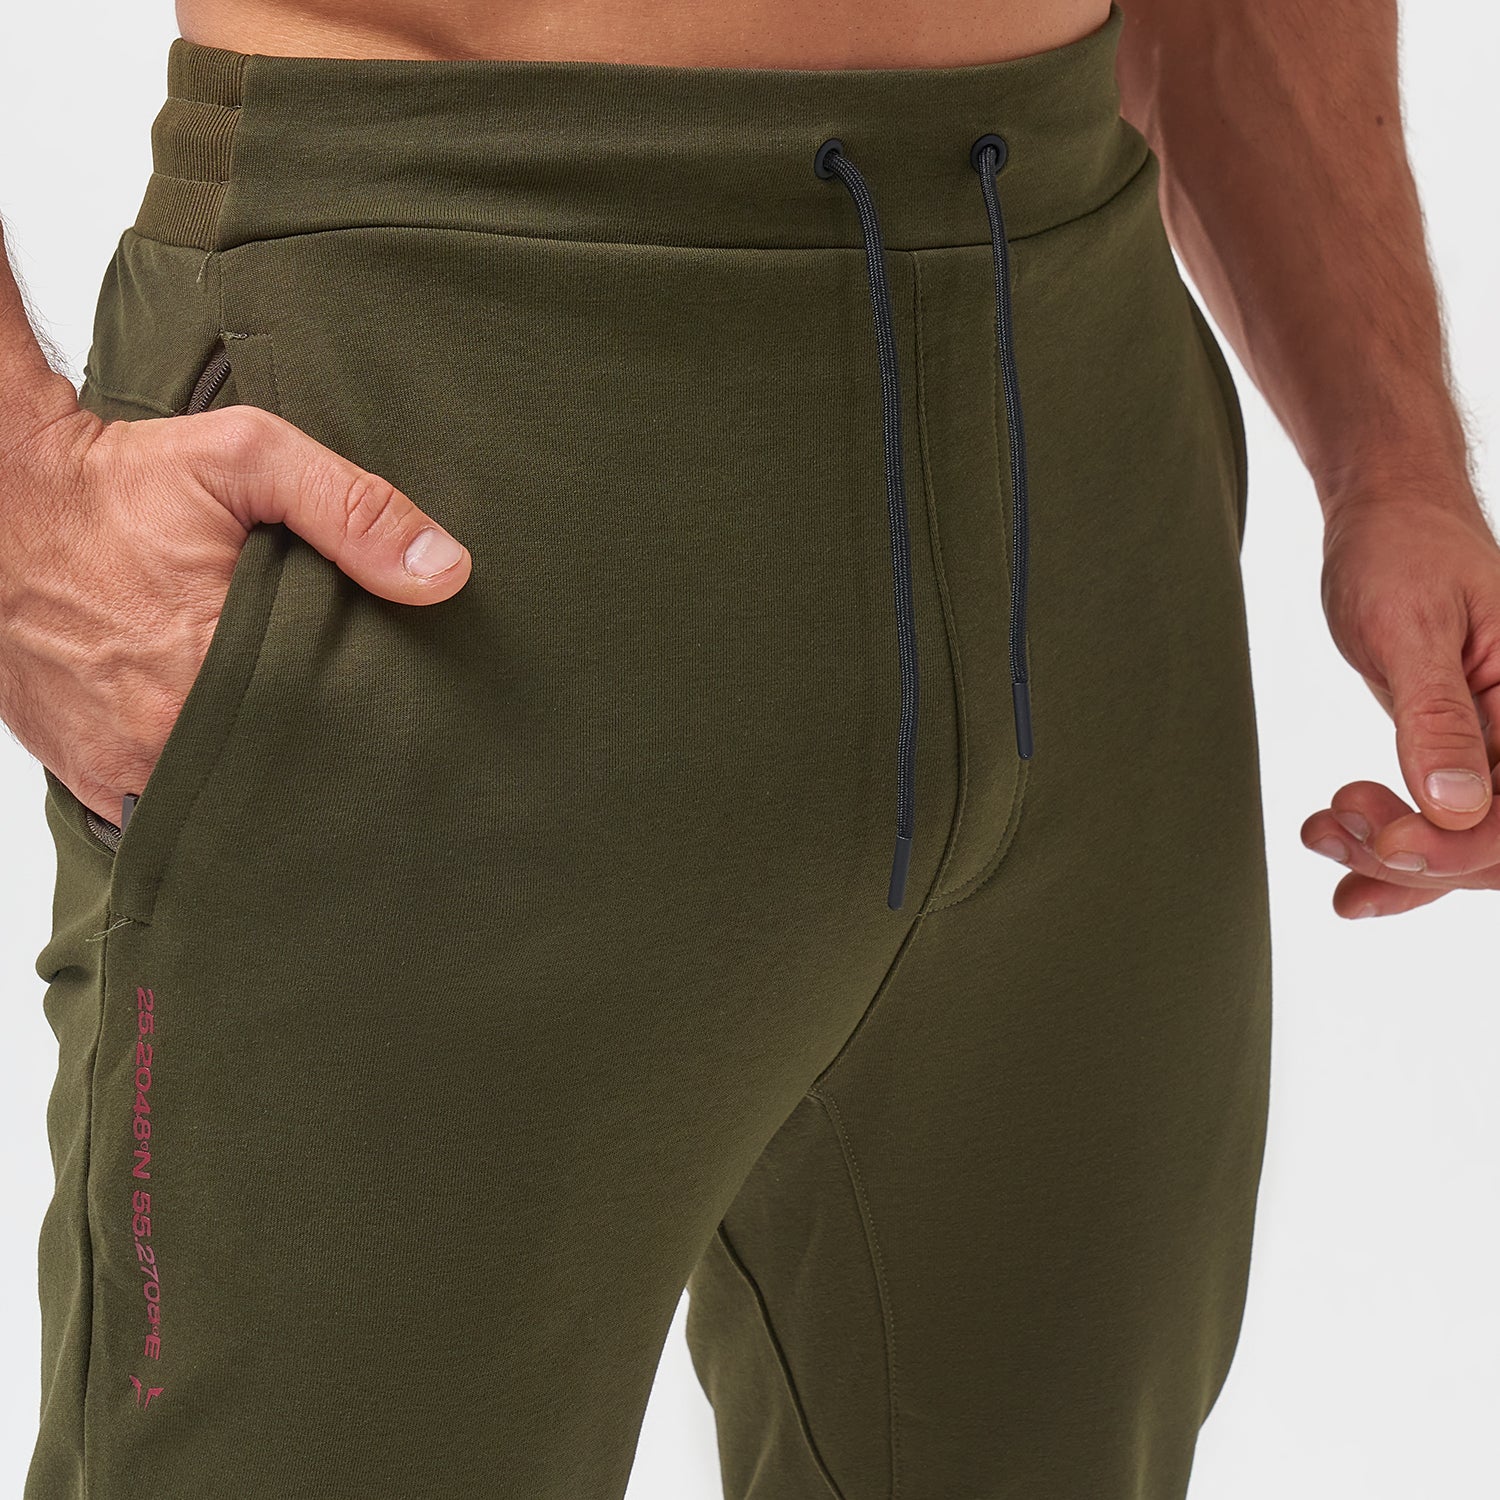 squatwolf-gym-wear-code-urban-sweat-pants-khaki-workout-pants-for-men